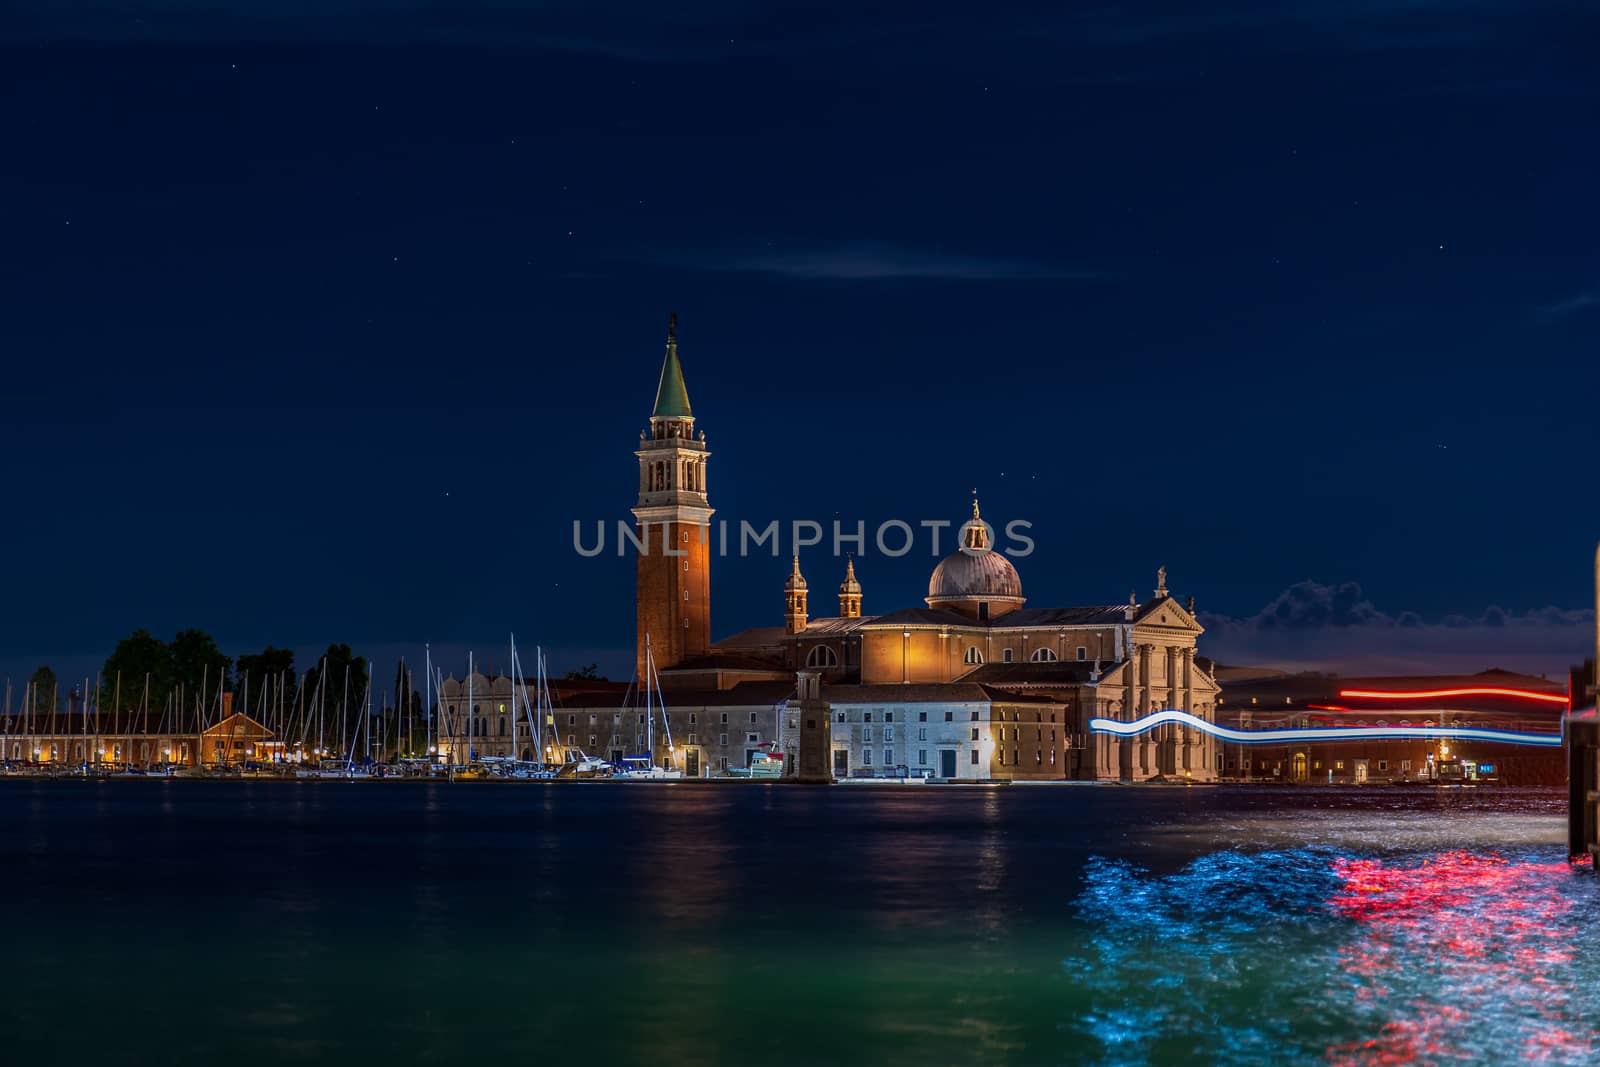 Amazing night shot of San Giorgio Maggiore